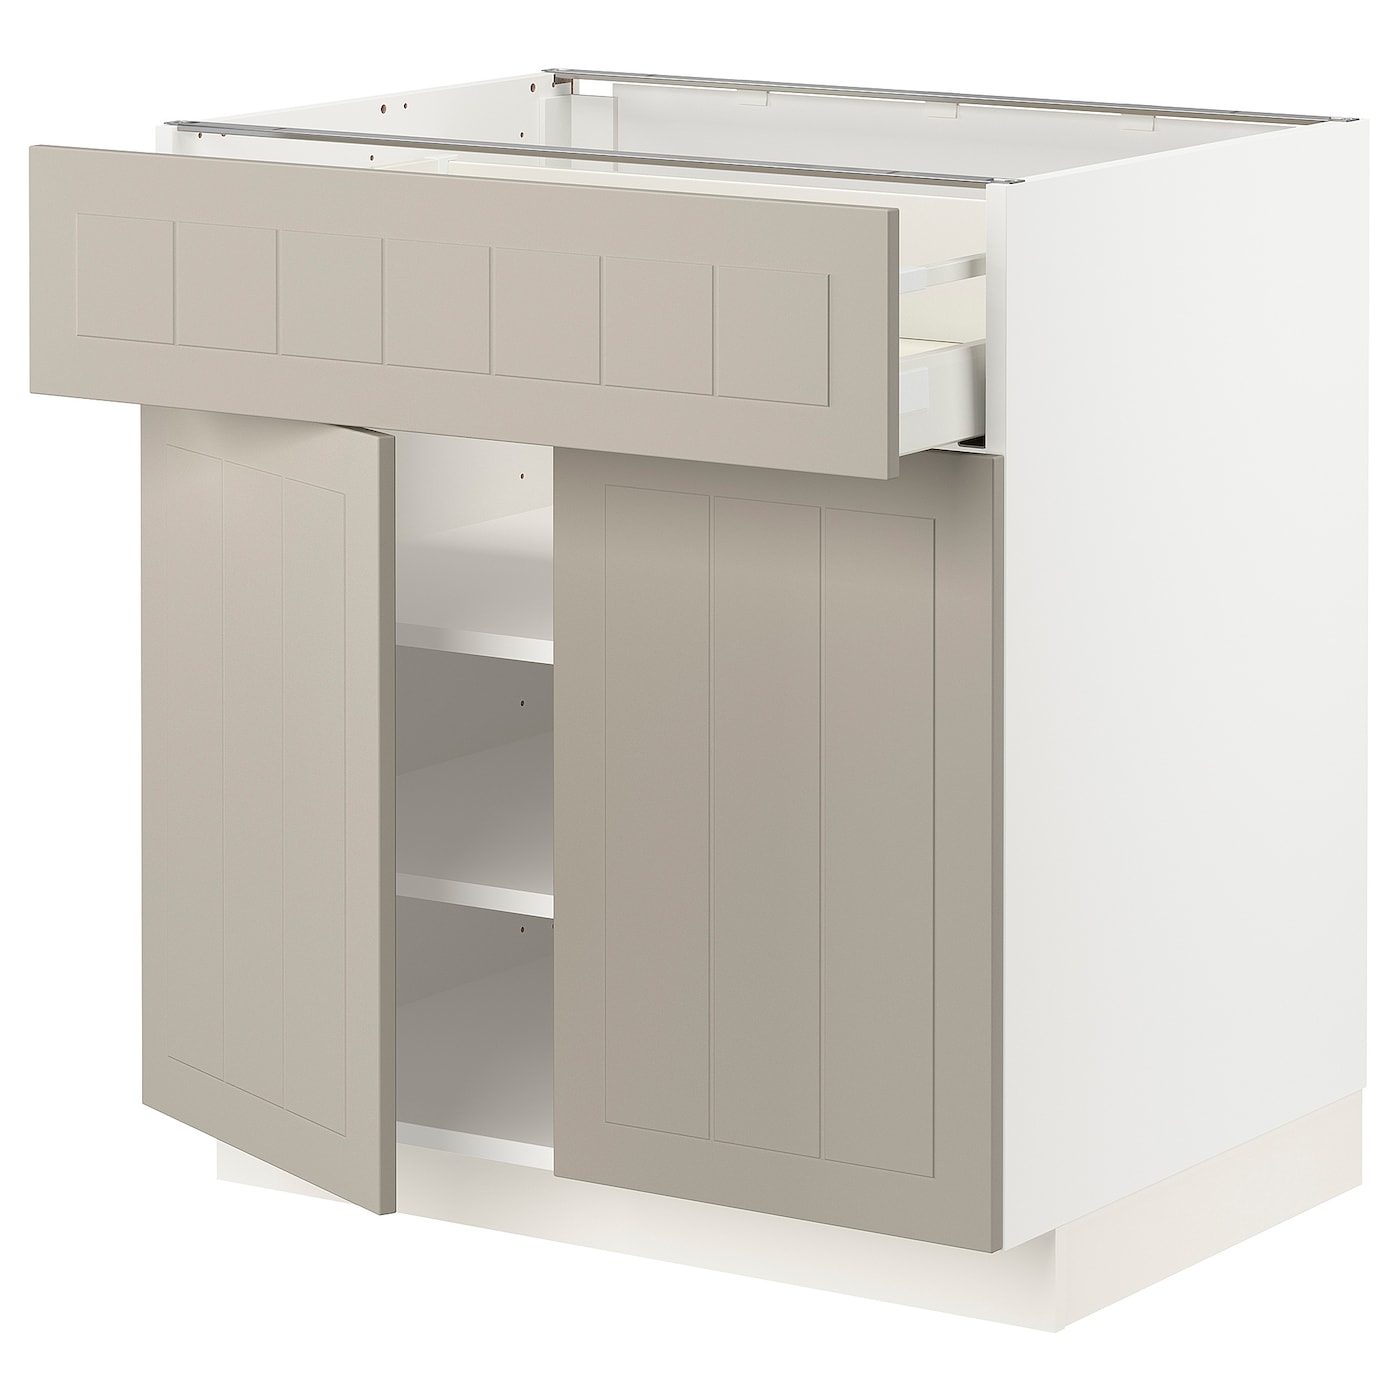 Напольный кухонный шкаф  - IKEA METOD MAXIMERA, 88x62x80см, белый/темно-бежевый, МЕТОД МАКСИМЕРА ИКЕА